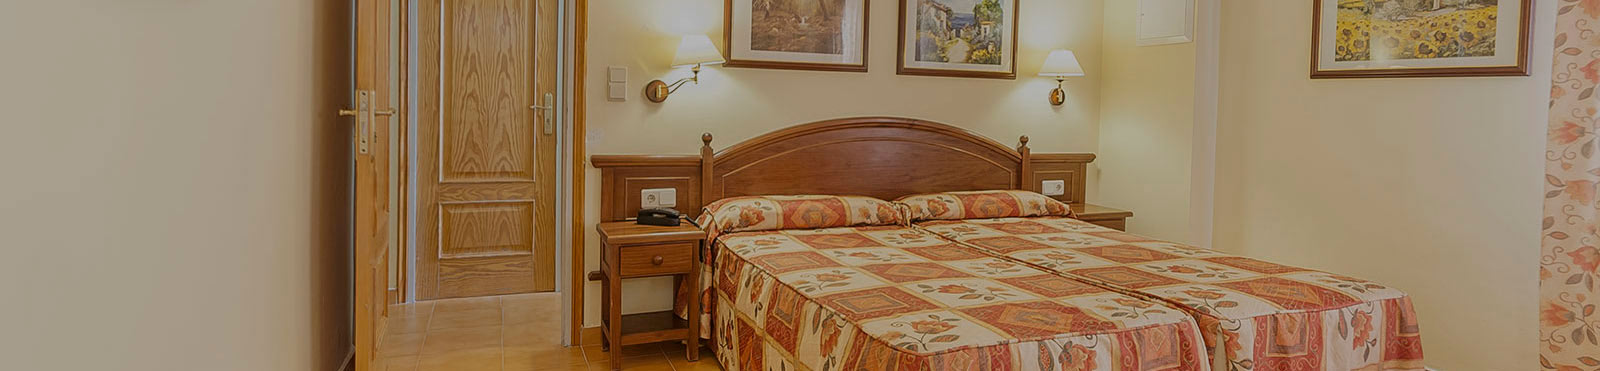 Hotel Montercalo Andorra: Su Hotel familiar y barato en Encamp